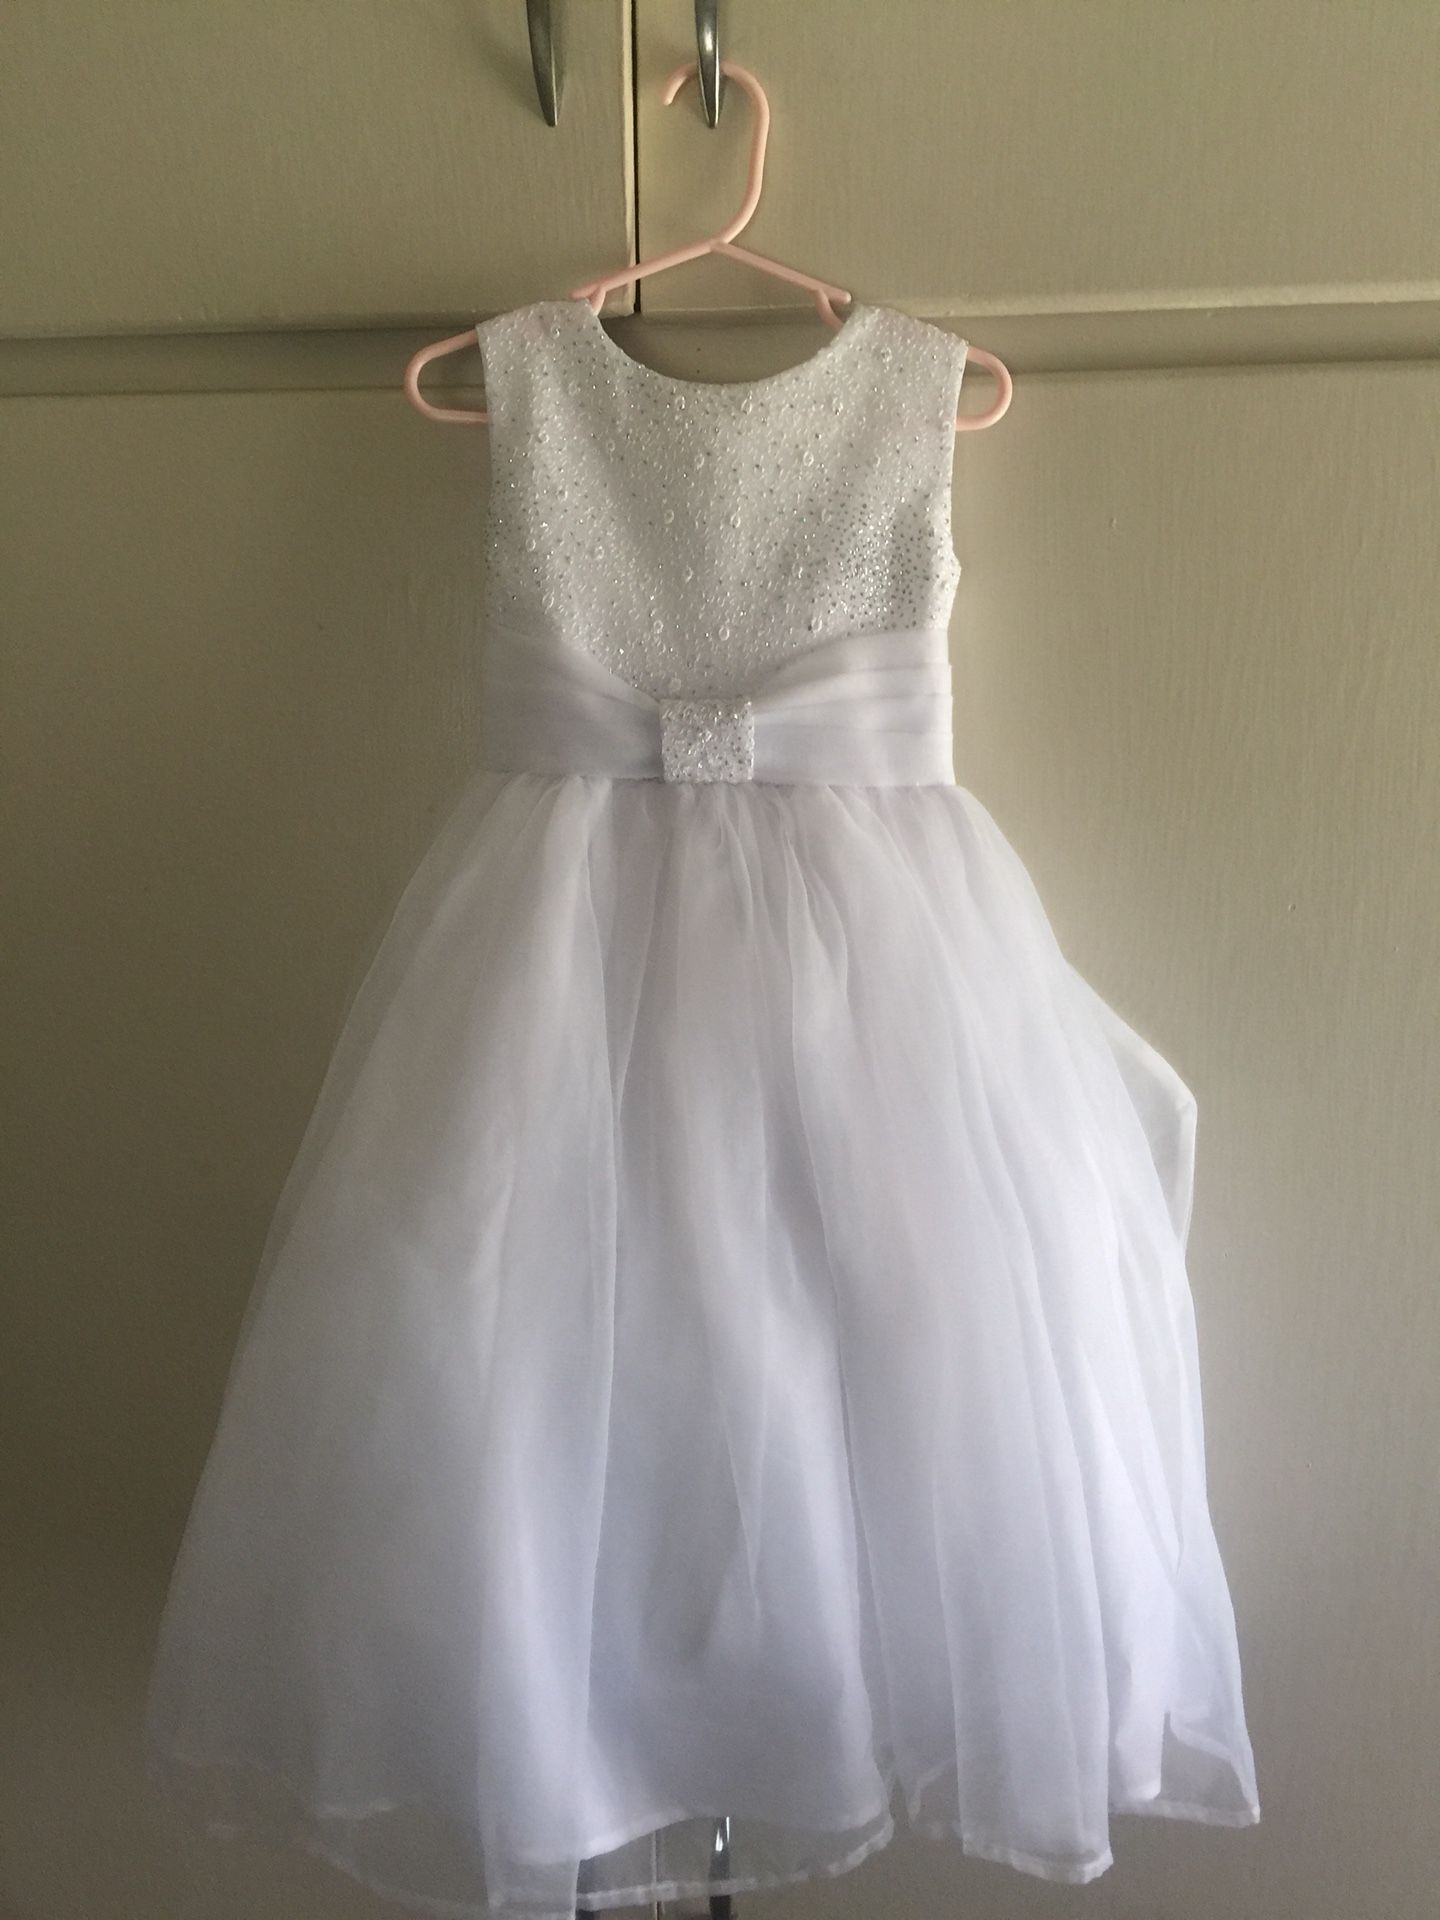 White flower girl dress size 2